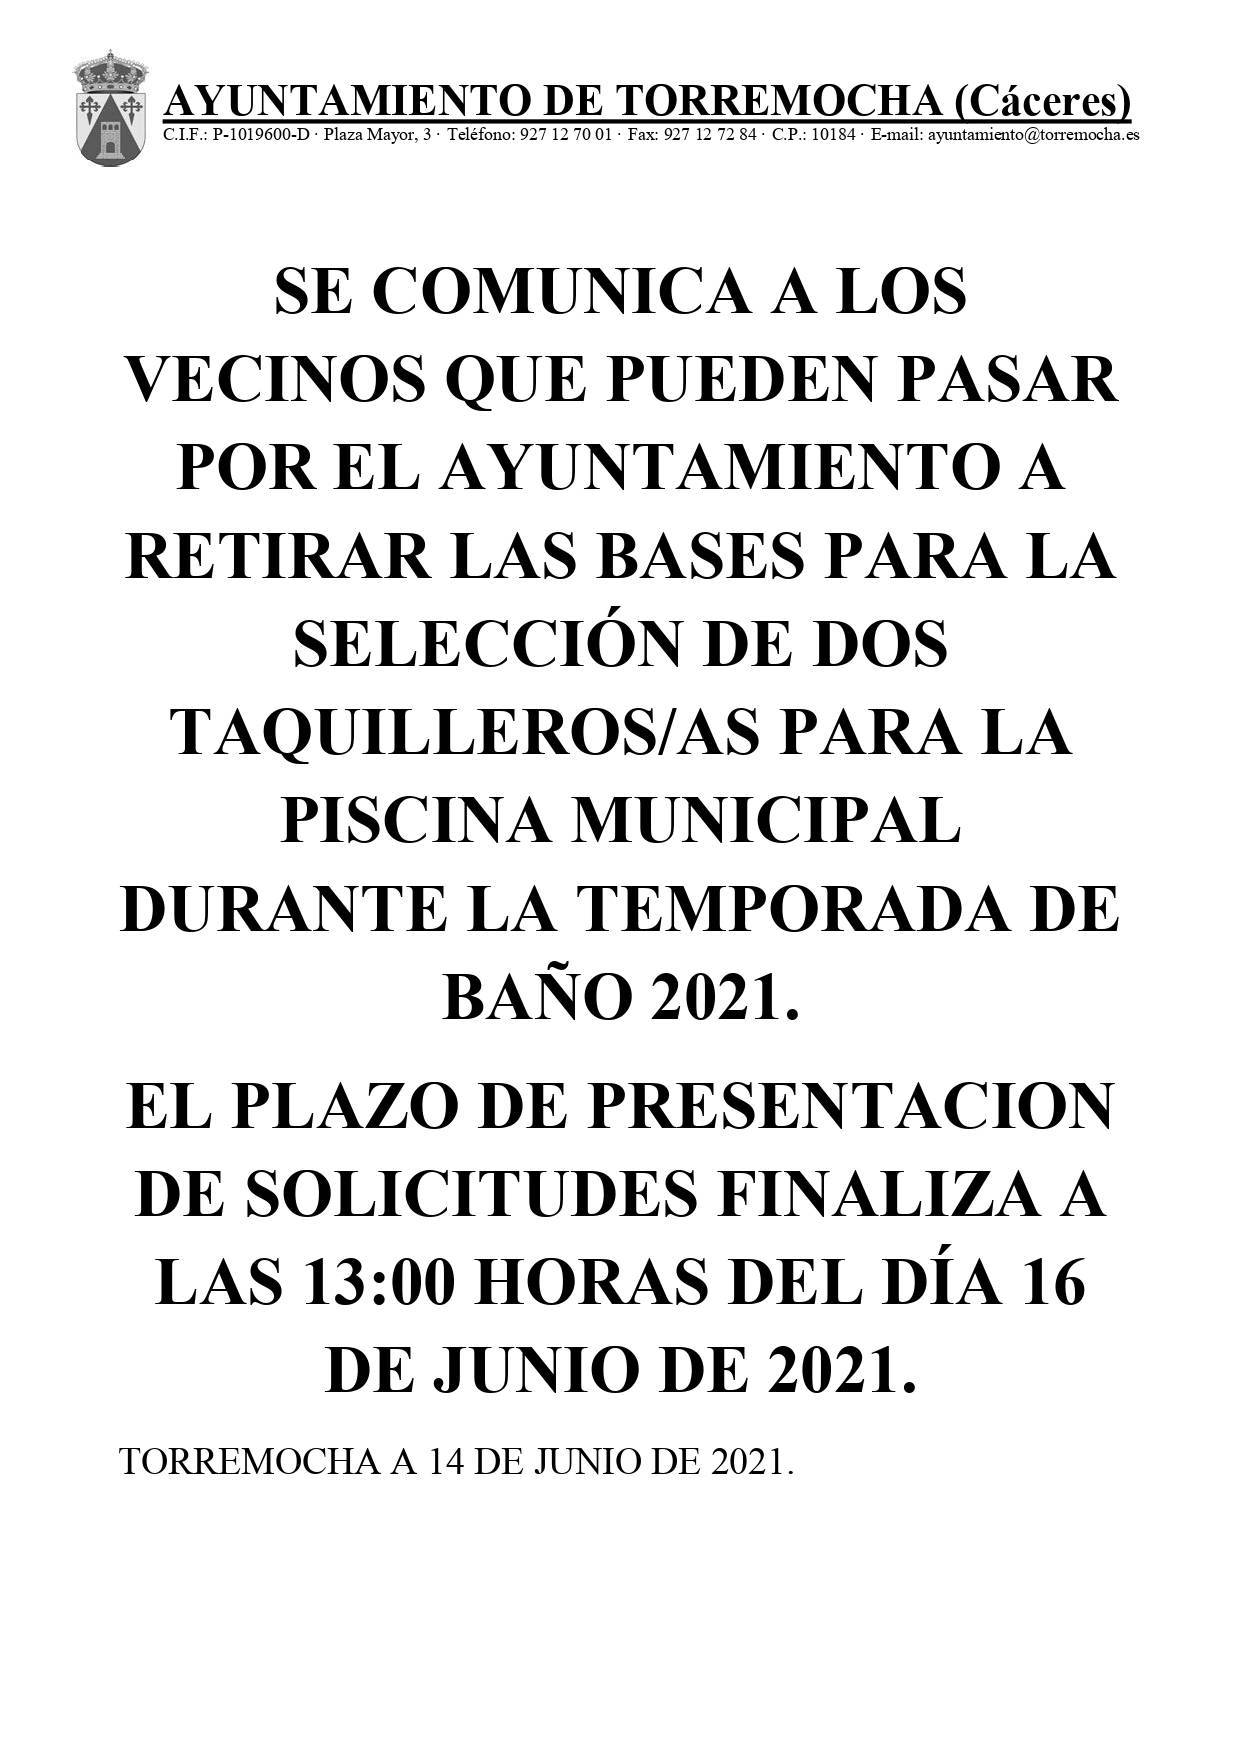 2 taquilleros-as para la piscina municipal (2021) - Torremocha (Cáceres)